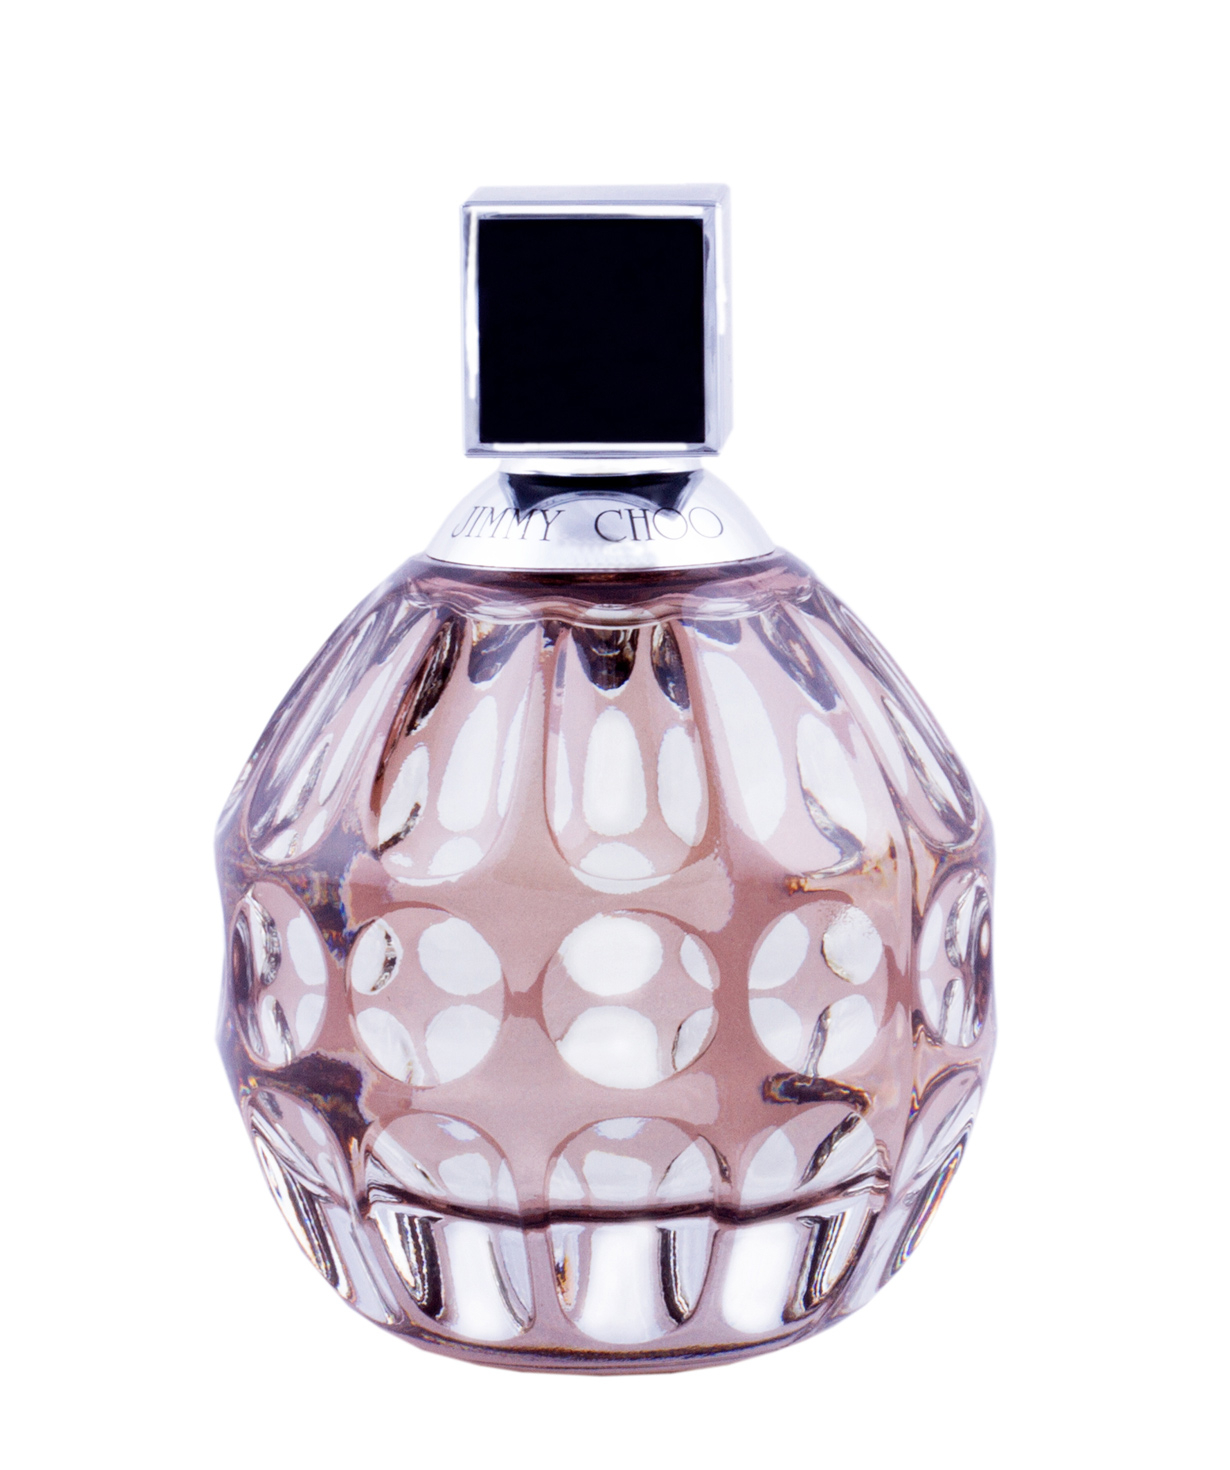 Perfume «Jimmy Choo» EDP, for women, 60 ml